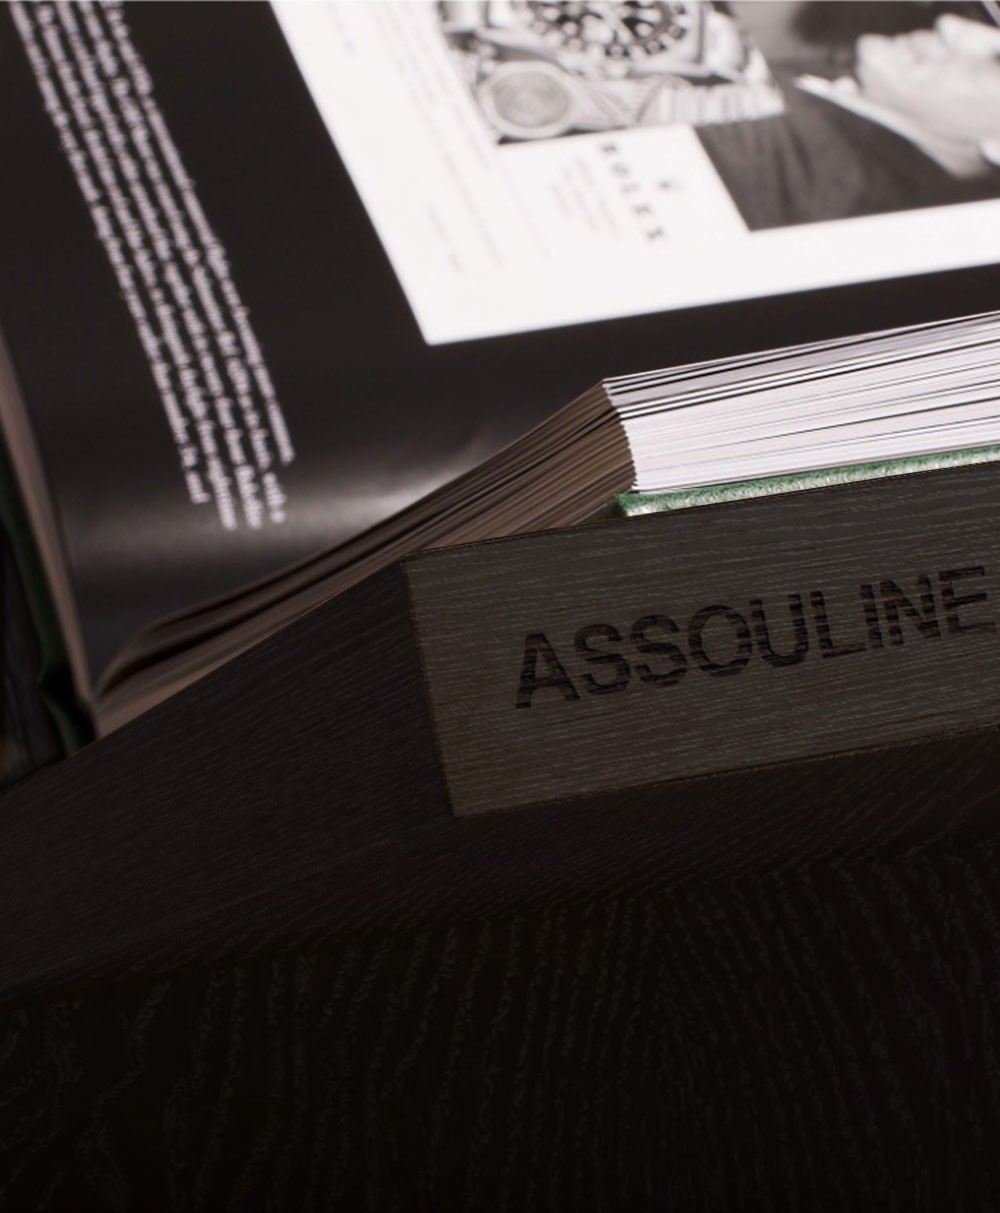 Hier abgebildet ist der Buchständer Allure von der Marke Assouline in ebony – im Onlineshop RAUM concept store